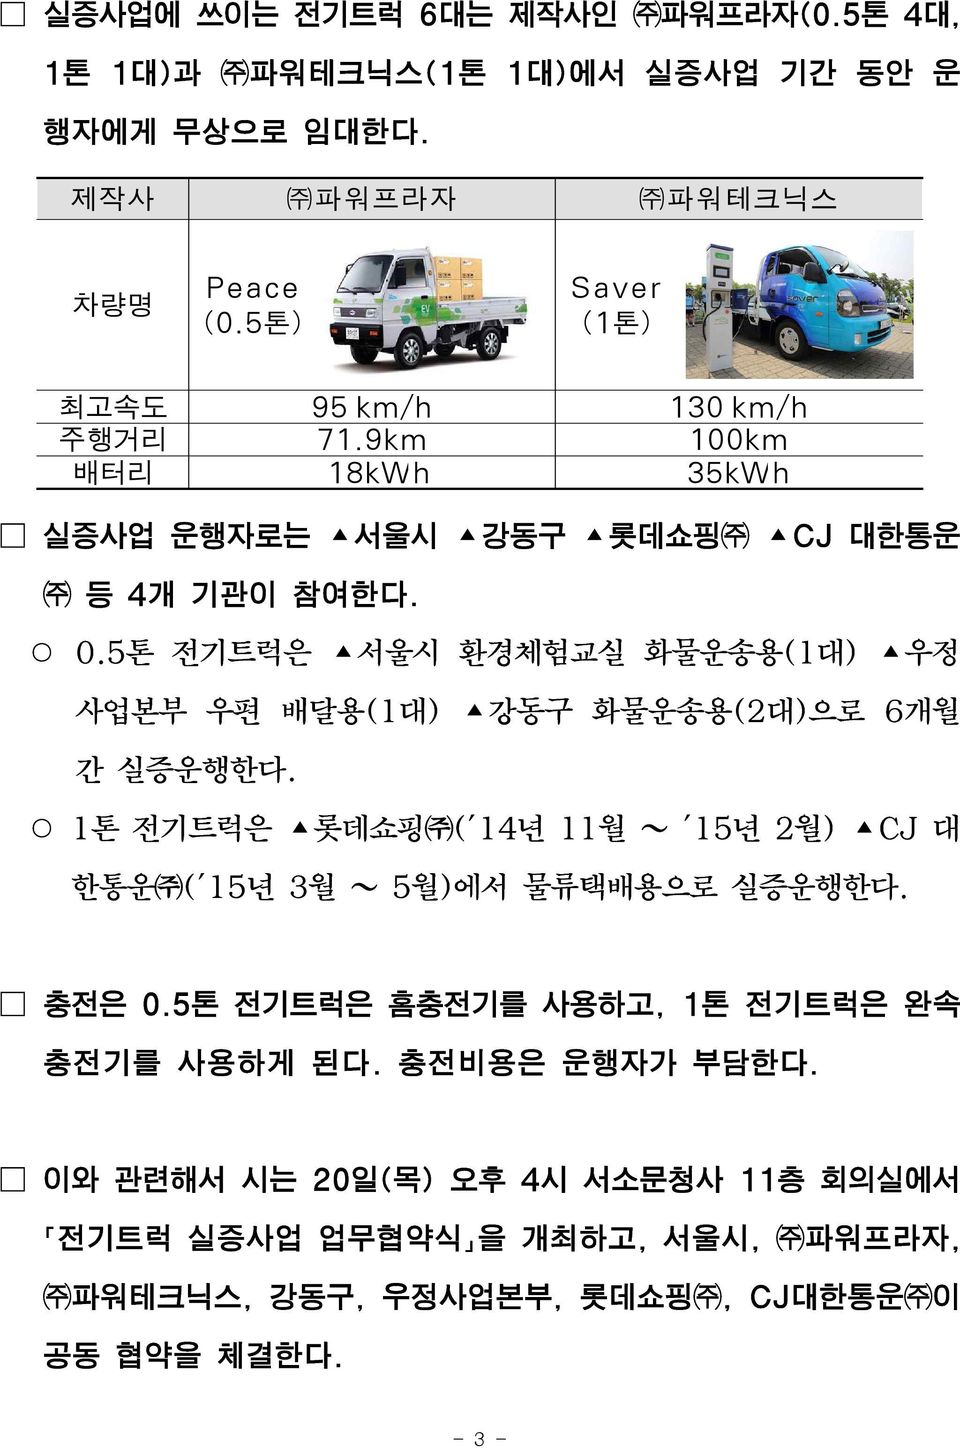 5톤 전기트럭은 서울시 환경체험교실 화물운송용(1대) 우정 사업본부 우편 배달용(1대) 강동구 화물운송용(2대)으로 6개월 간 실증운행한다.